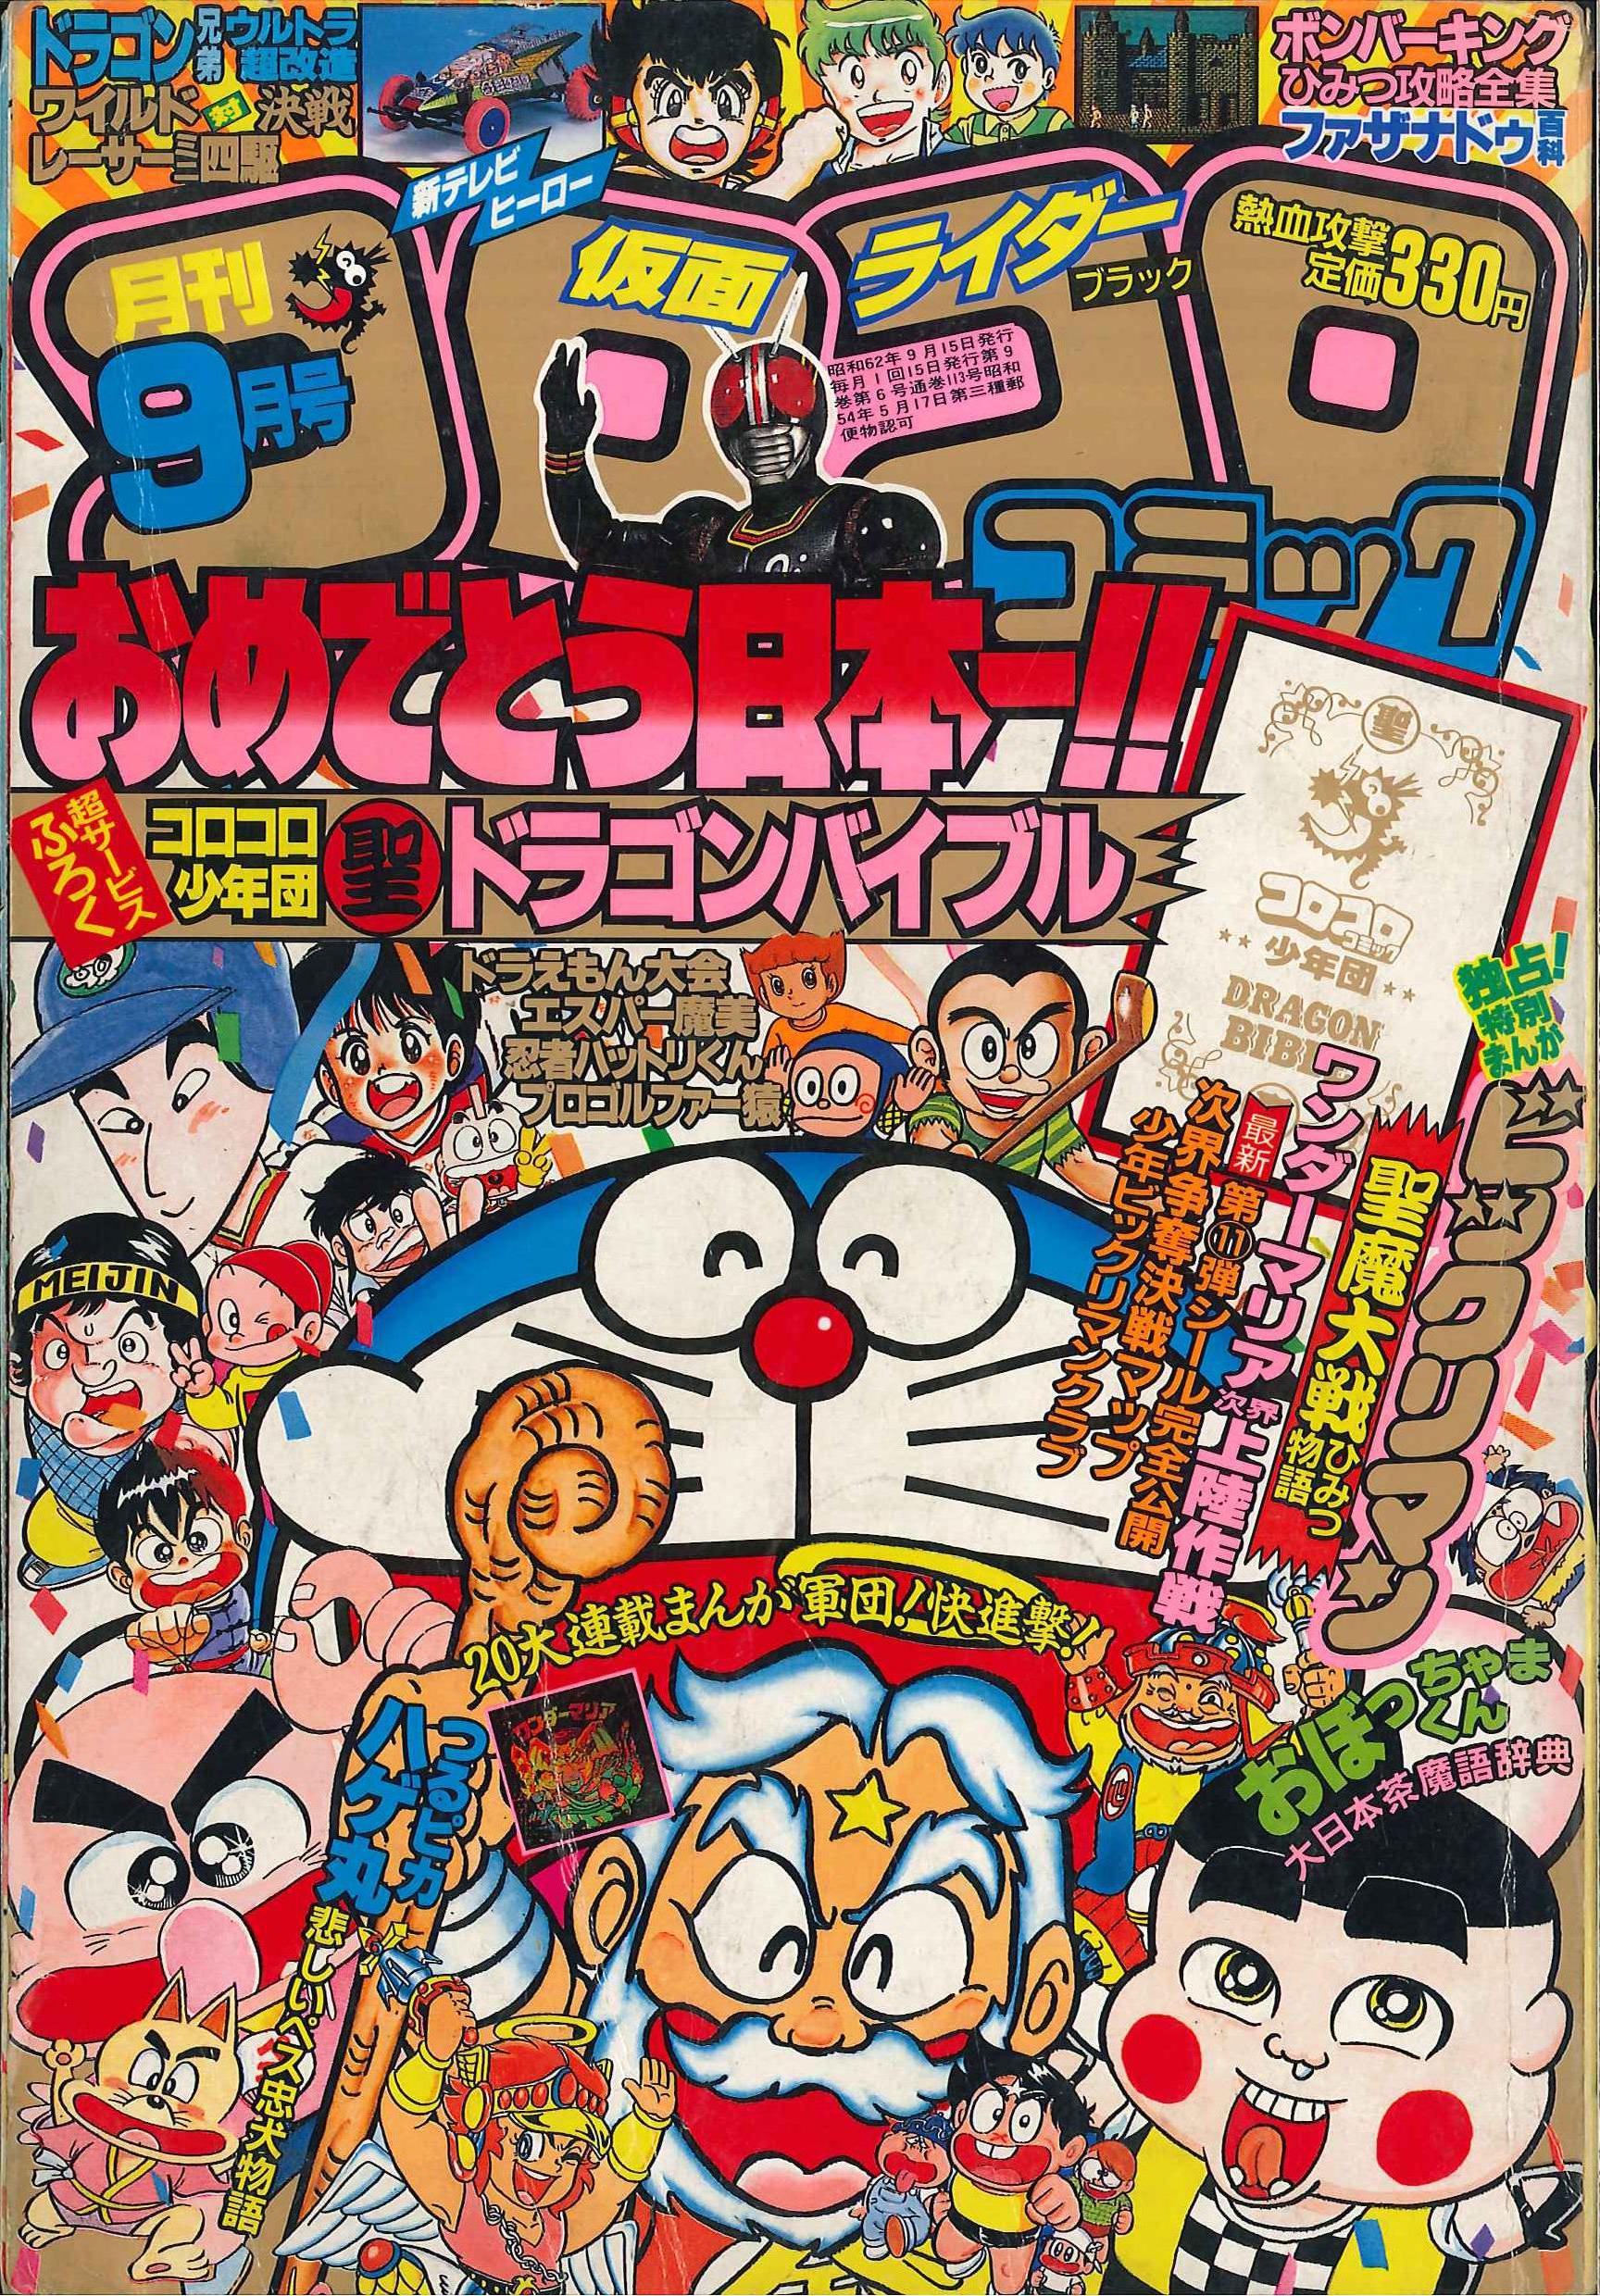 小学館 1987年(昭和62年)の漫画雑誌 『コロコロコミック 1987年(昭和62